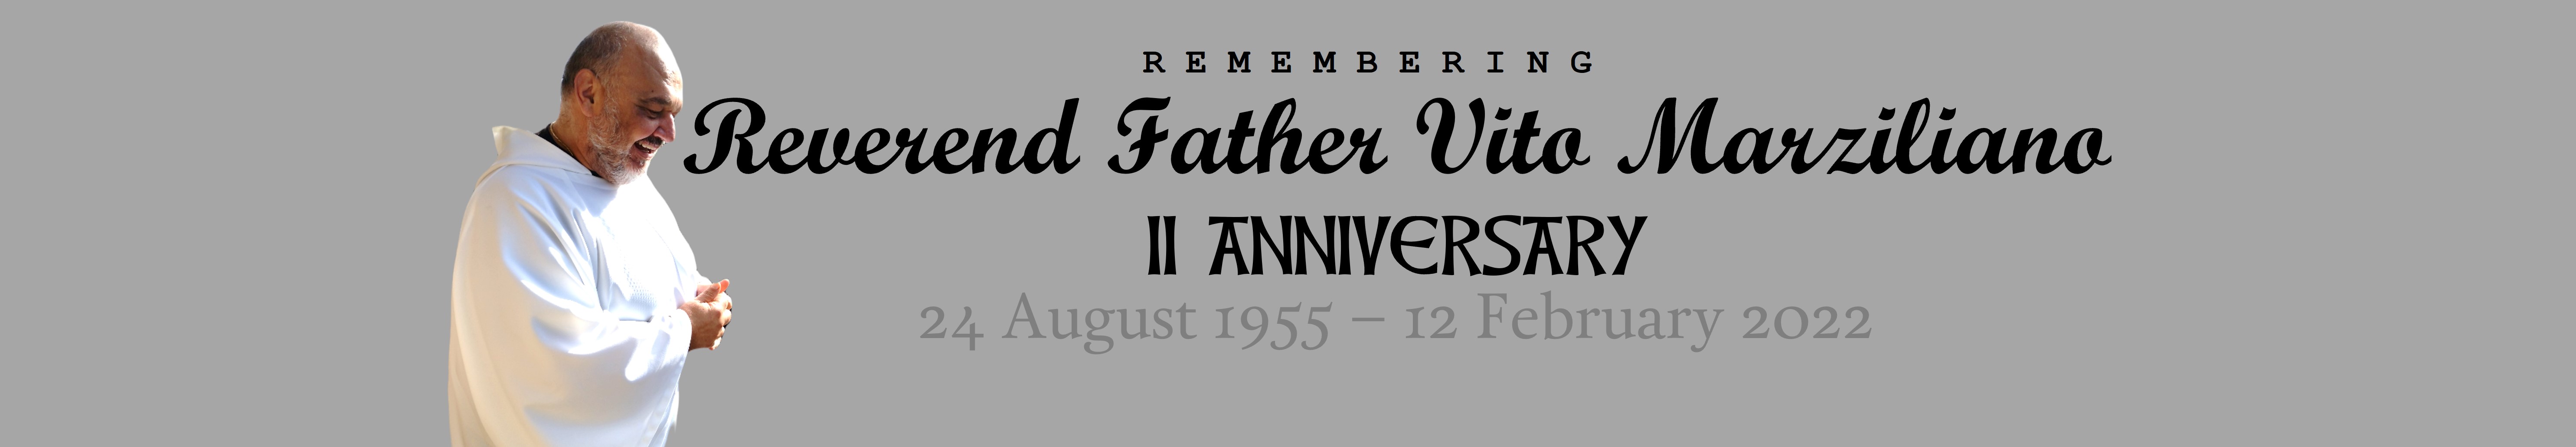 Father Vito, II Anniversary